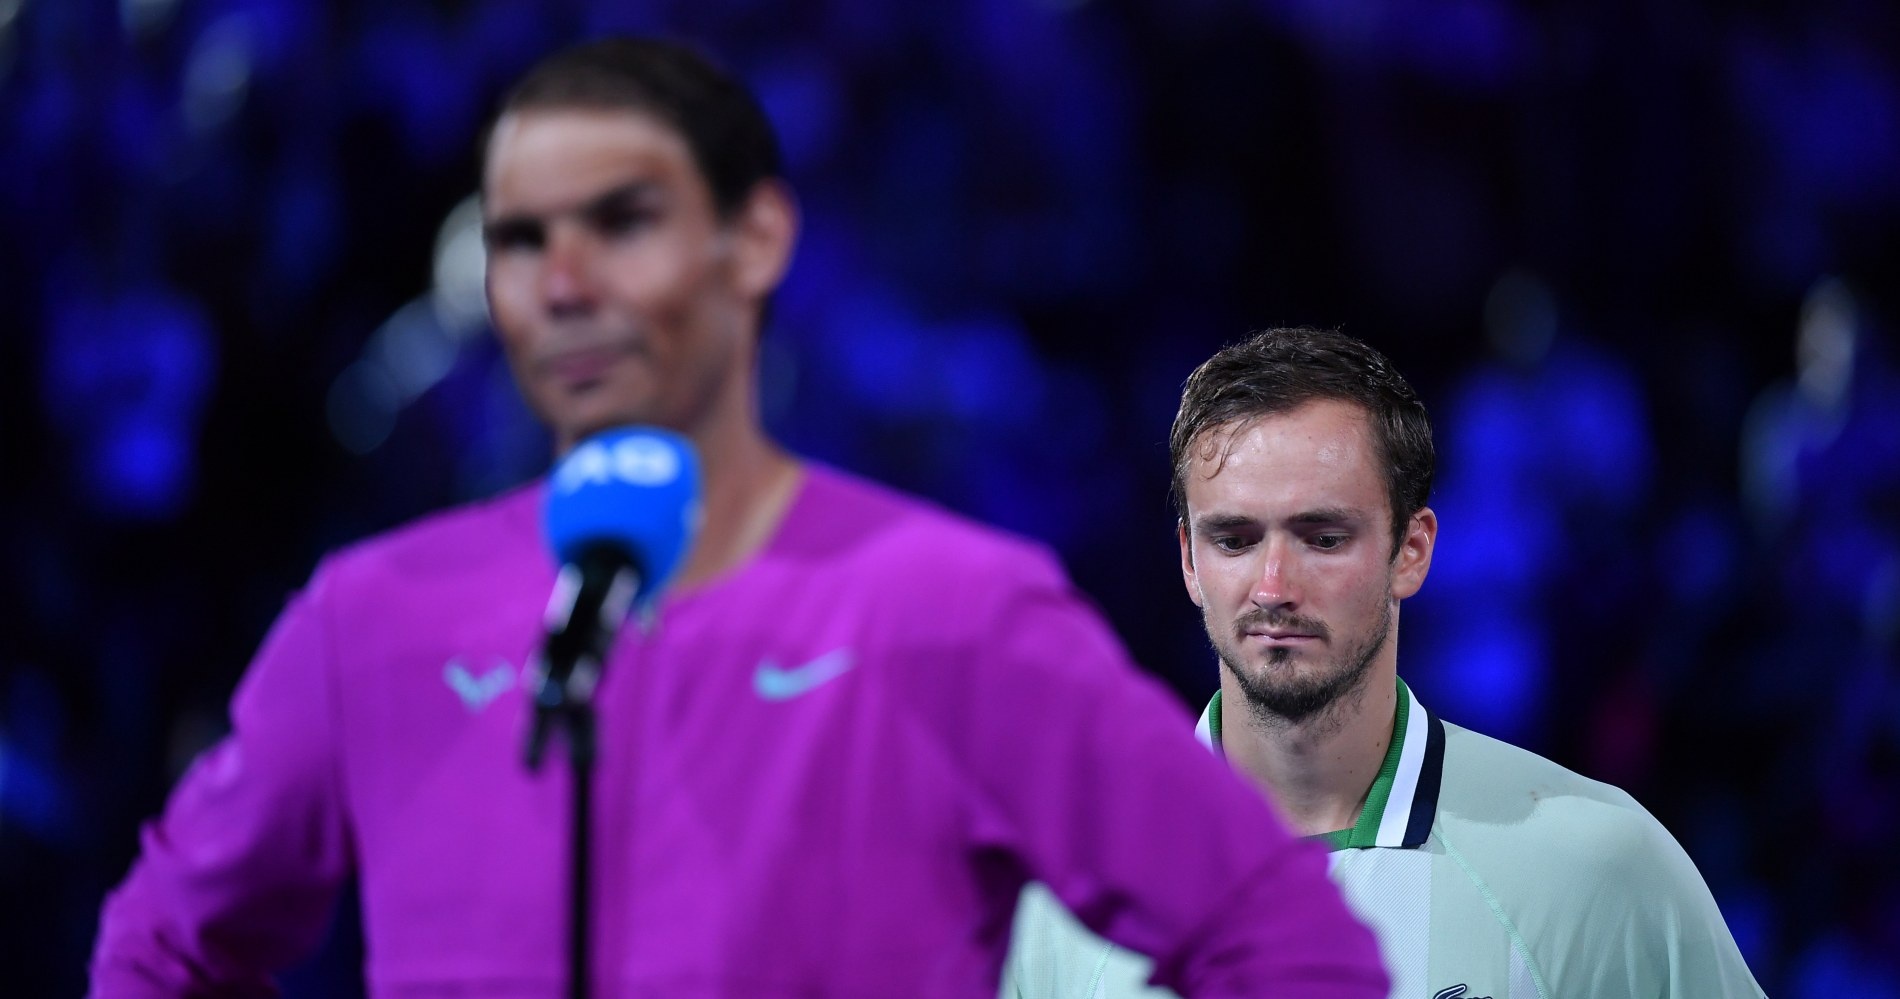 Daniil Medvedev et Rafael Nadal, Open d'Australie 2022